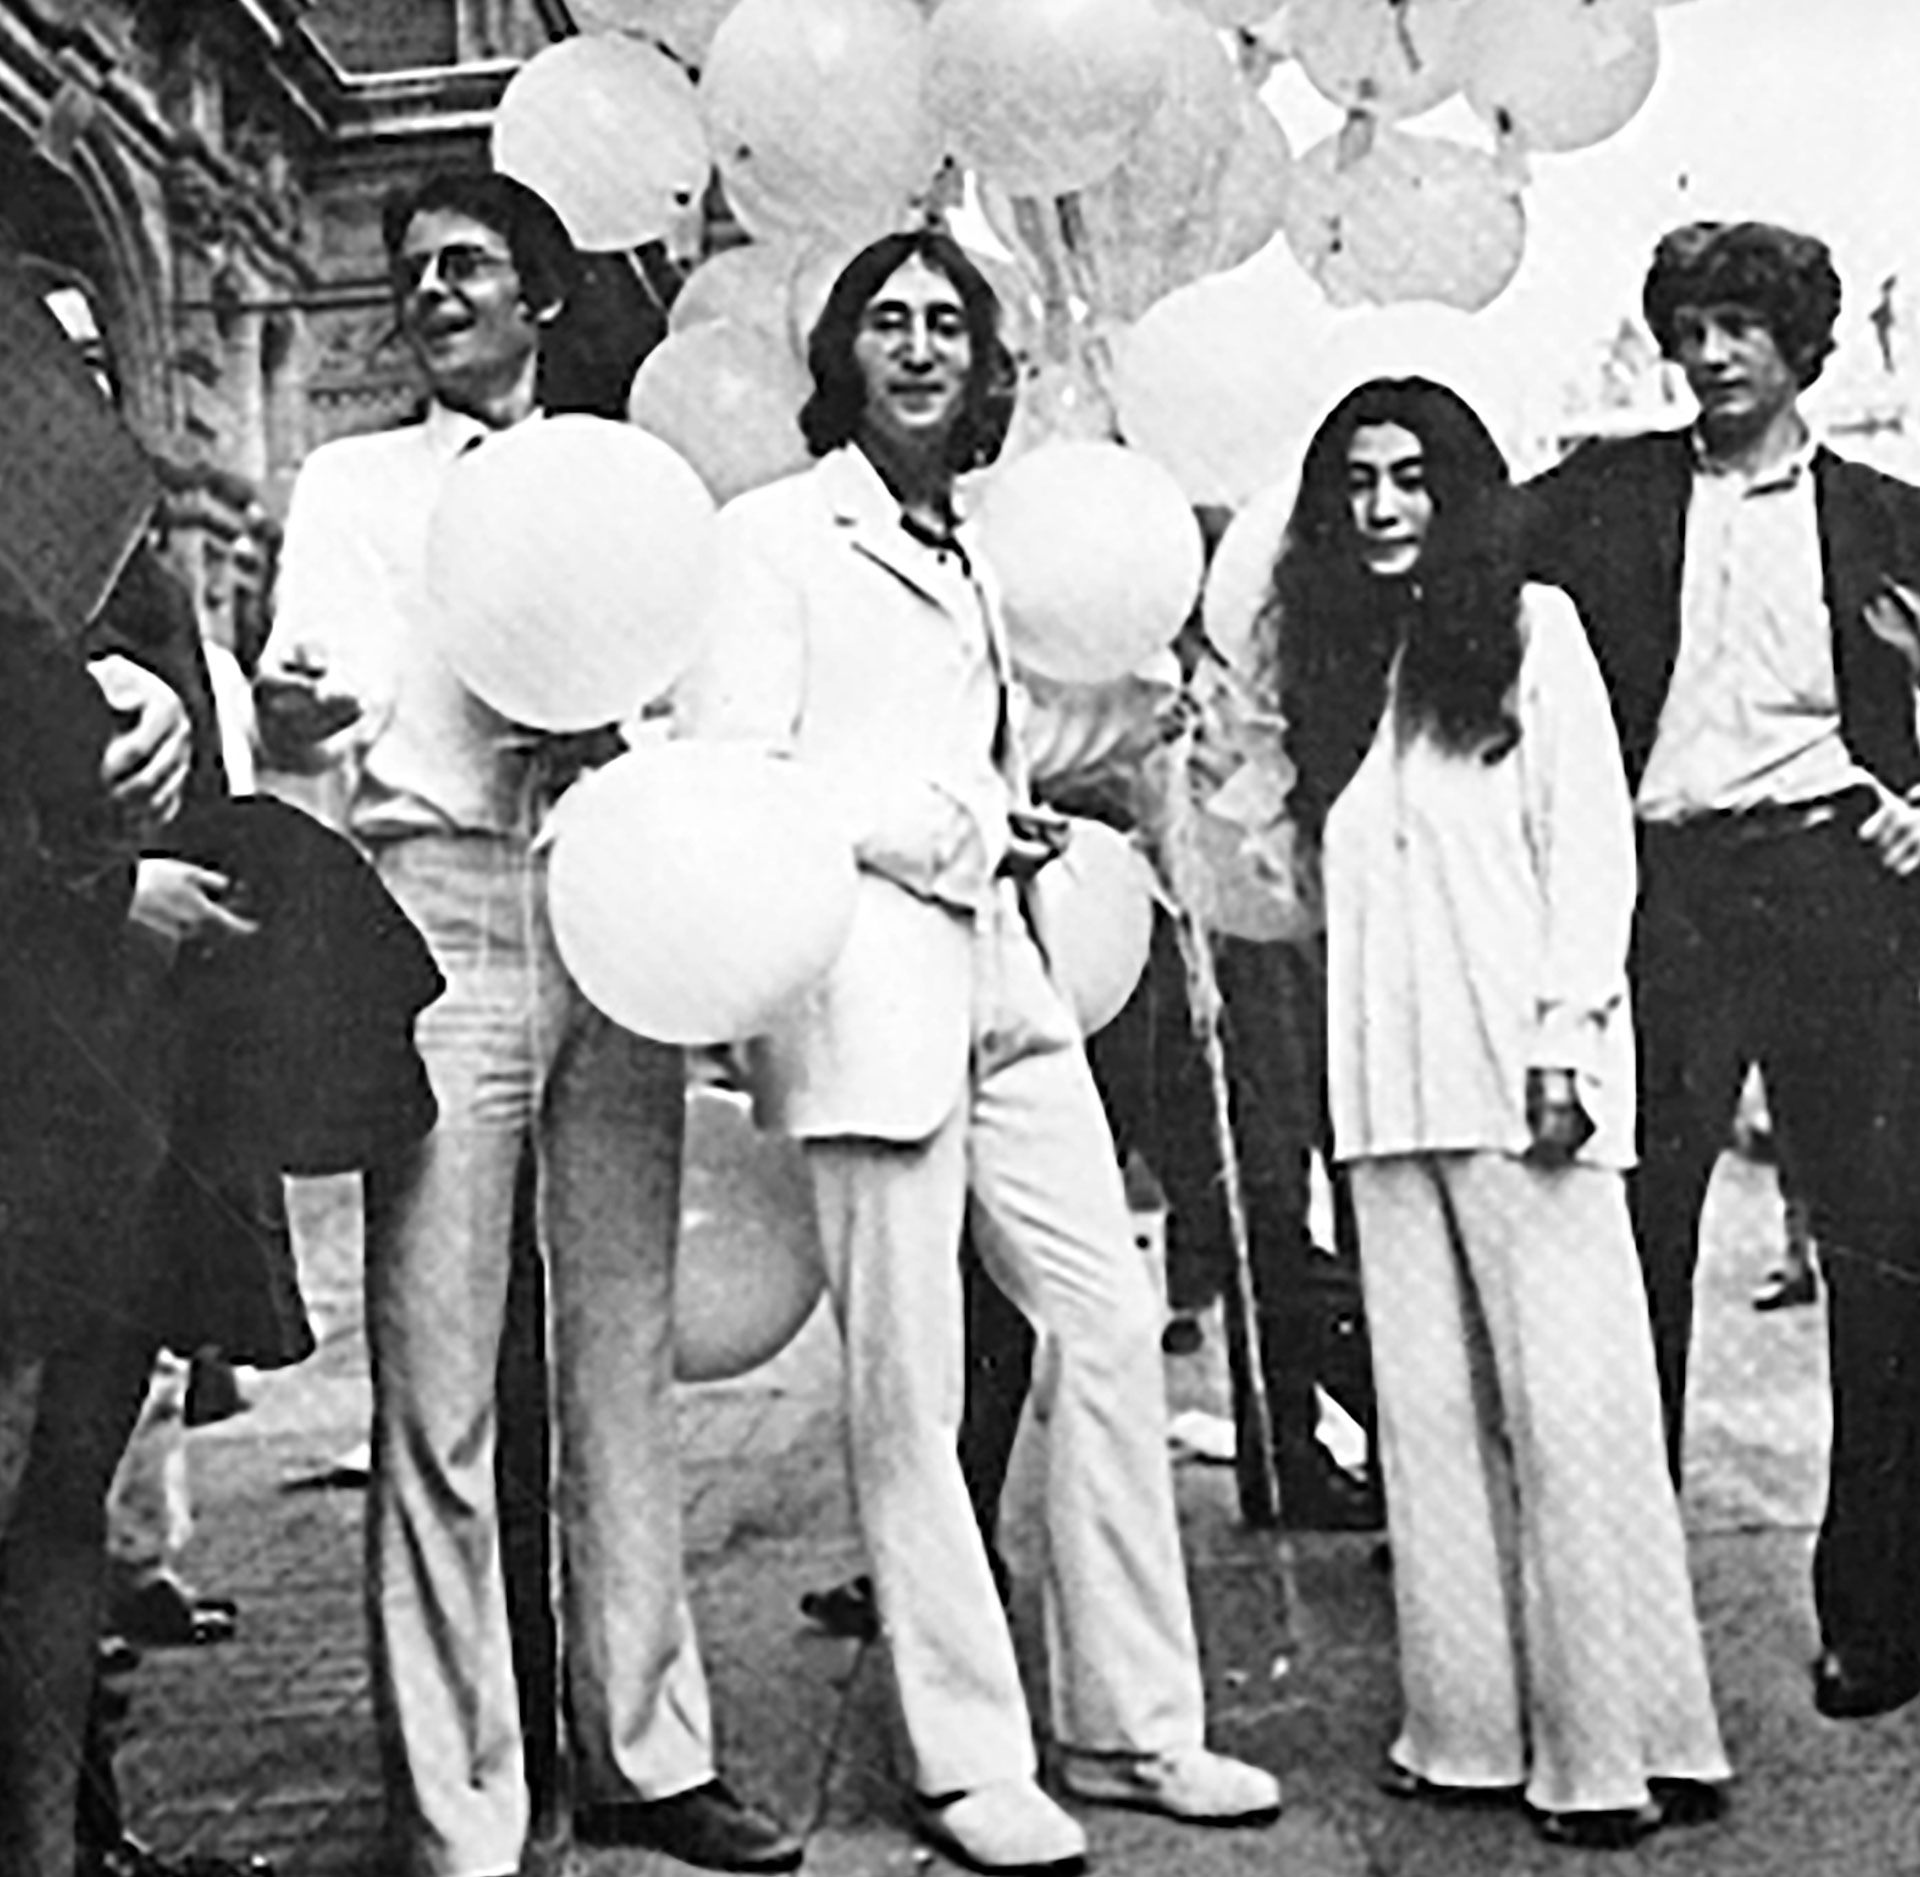 Kevin, junto a John Lennon y Yoko Ono, en una muestra artística que la pareja realizó en Londres (Foto extraída del libro "Who's the redhead on the roof")